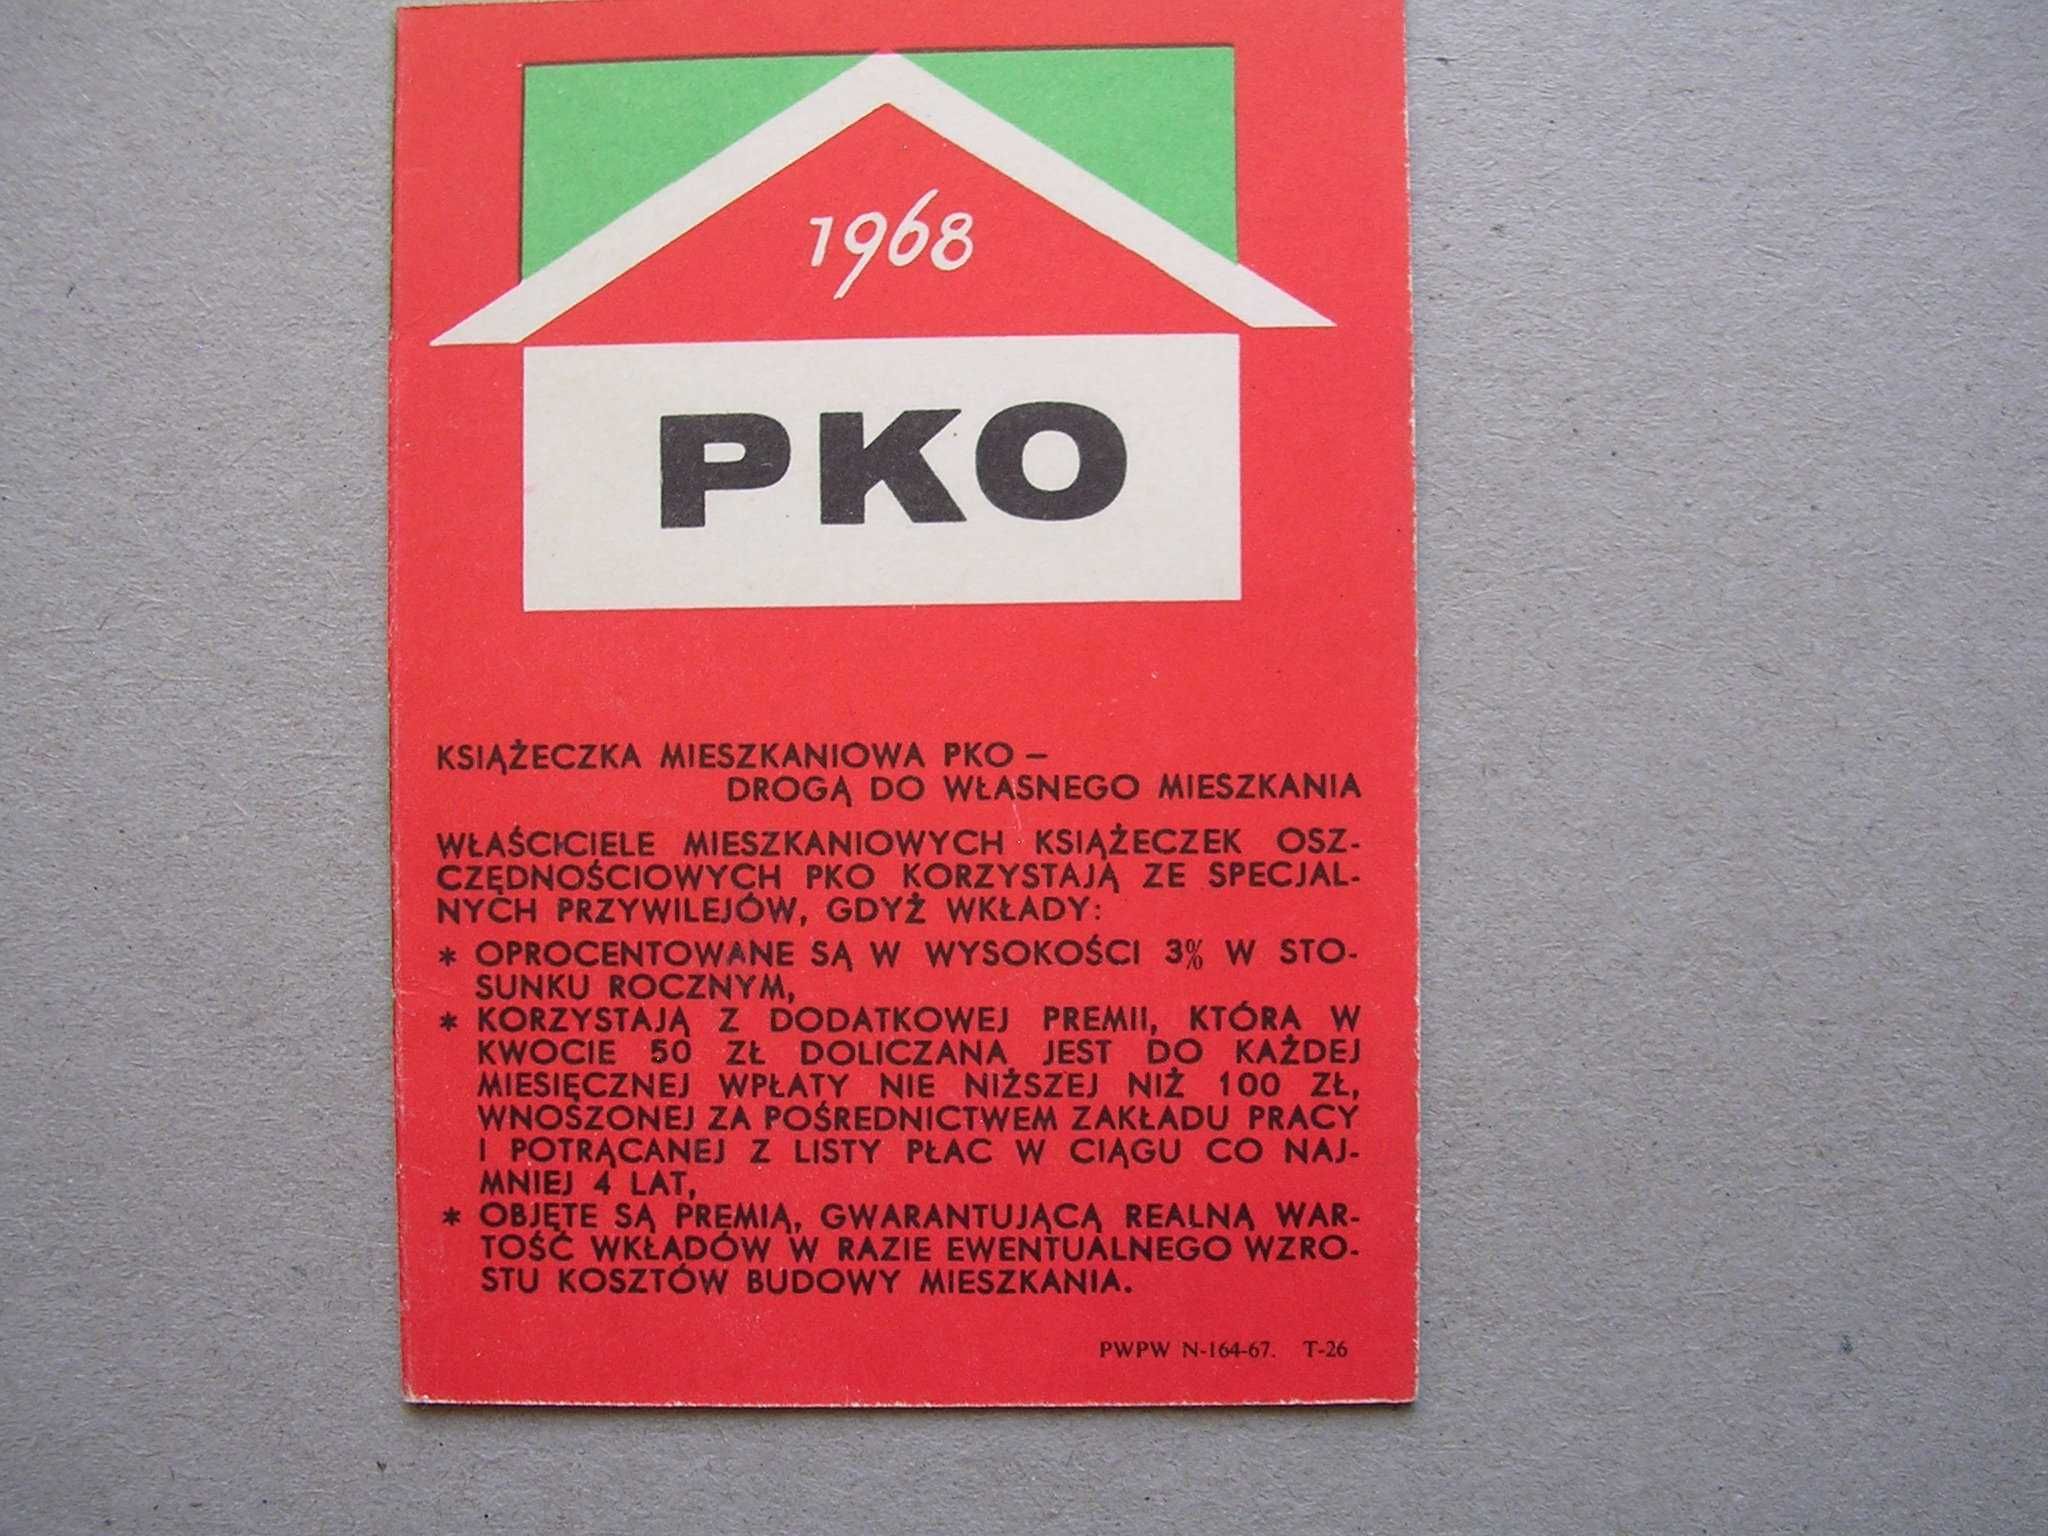 Stary kalendarzyk kolekcjonerski z prl - u PKO 1968 rok